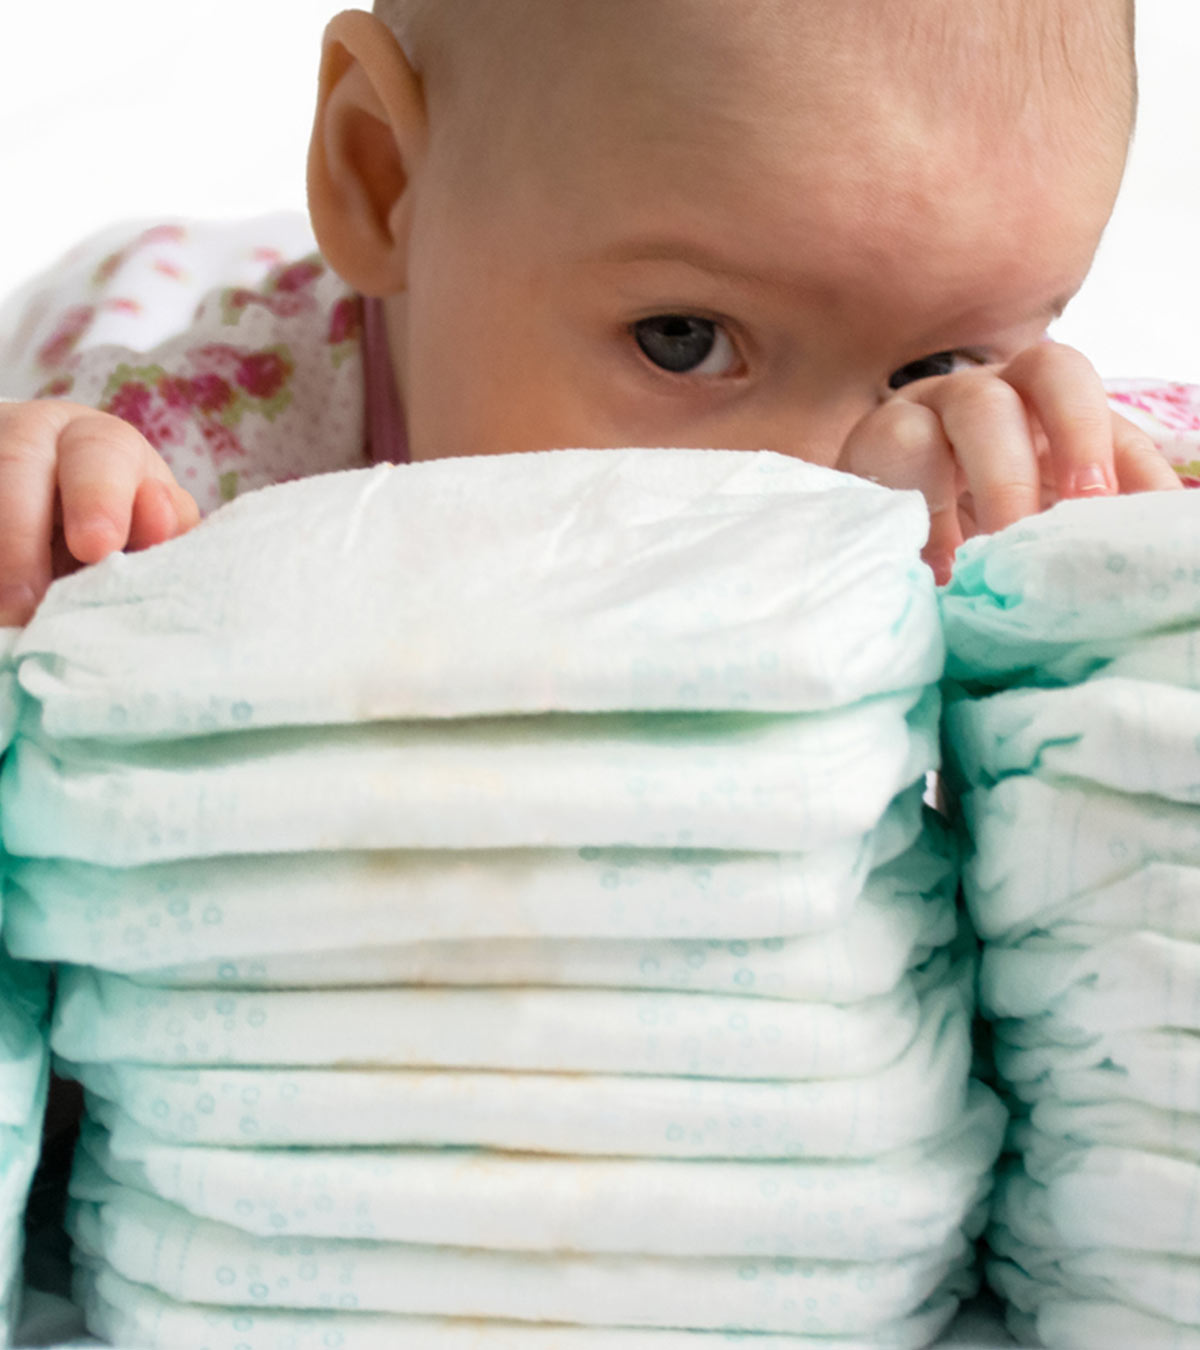 尿布会过期吗?宝宝用旧尿布安全吗?